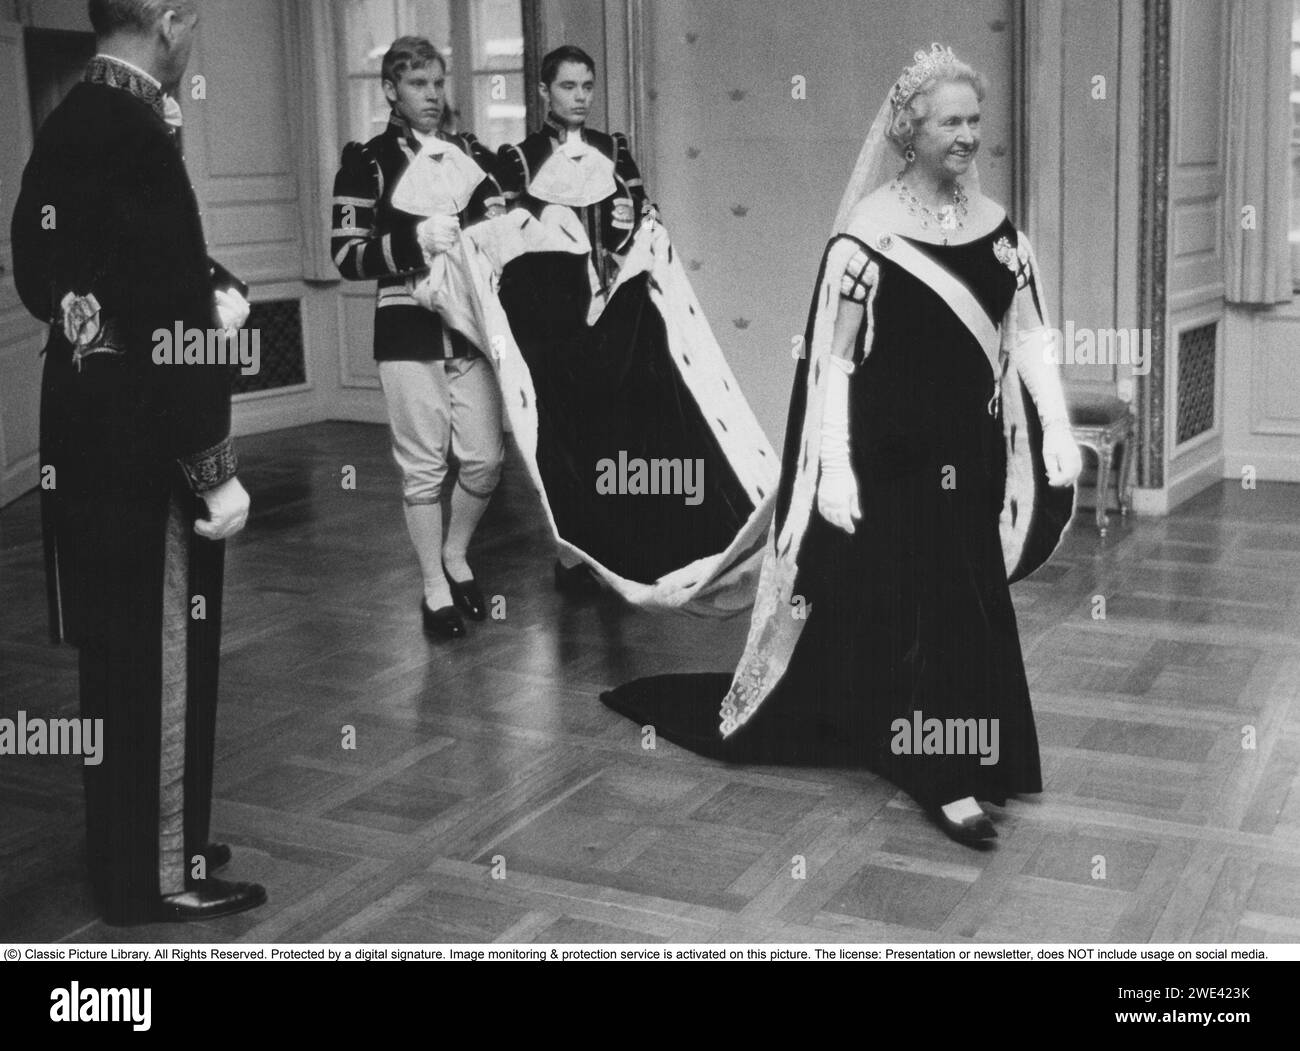 Prinzessin Sibylla von Sachsen-Coburg und Gotha. januar 1908 bis 28. november 1972. Sie war Mitglied der schwedischen Königsfamilie und Mutter des heutigen schwedischen Königs Carl XVI. Gustaf. Sie wurde schwedische Prinzessin, als sie 1932 den Herzog Gustaf Adolf von Västerbotten heiratete. Sie hatte damit die Aussicht, eines Tages Königin zu werden, aber der Prinz wurde 1947 bei einem Flugzeugabsturz getötet und lebte nicht mehr auf dem schwedischen Thron. Ihr Sohn wurde im Jahr nach ihrem Tod König. Bild am 13. januar 1972 zur Eröffnung des schwedischen parlaments, in einem langen Kleid mit zwei HofLakaien lif Stockfoto